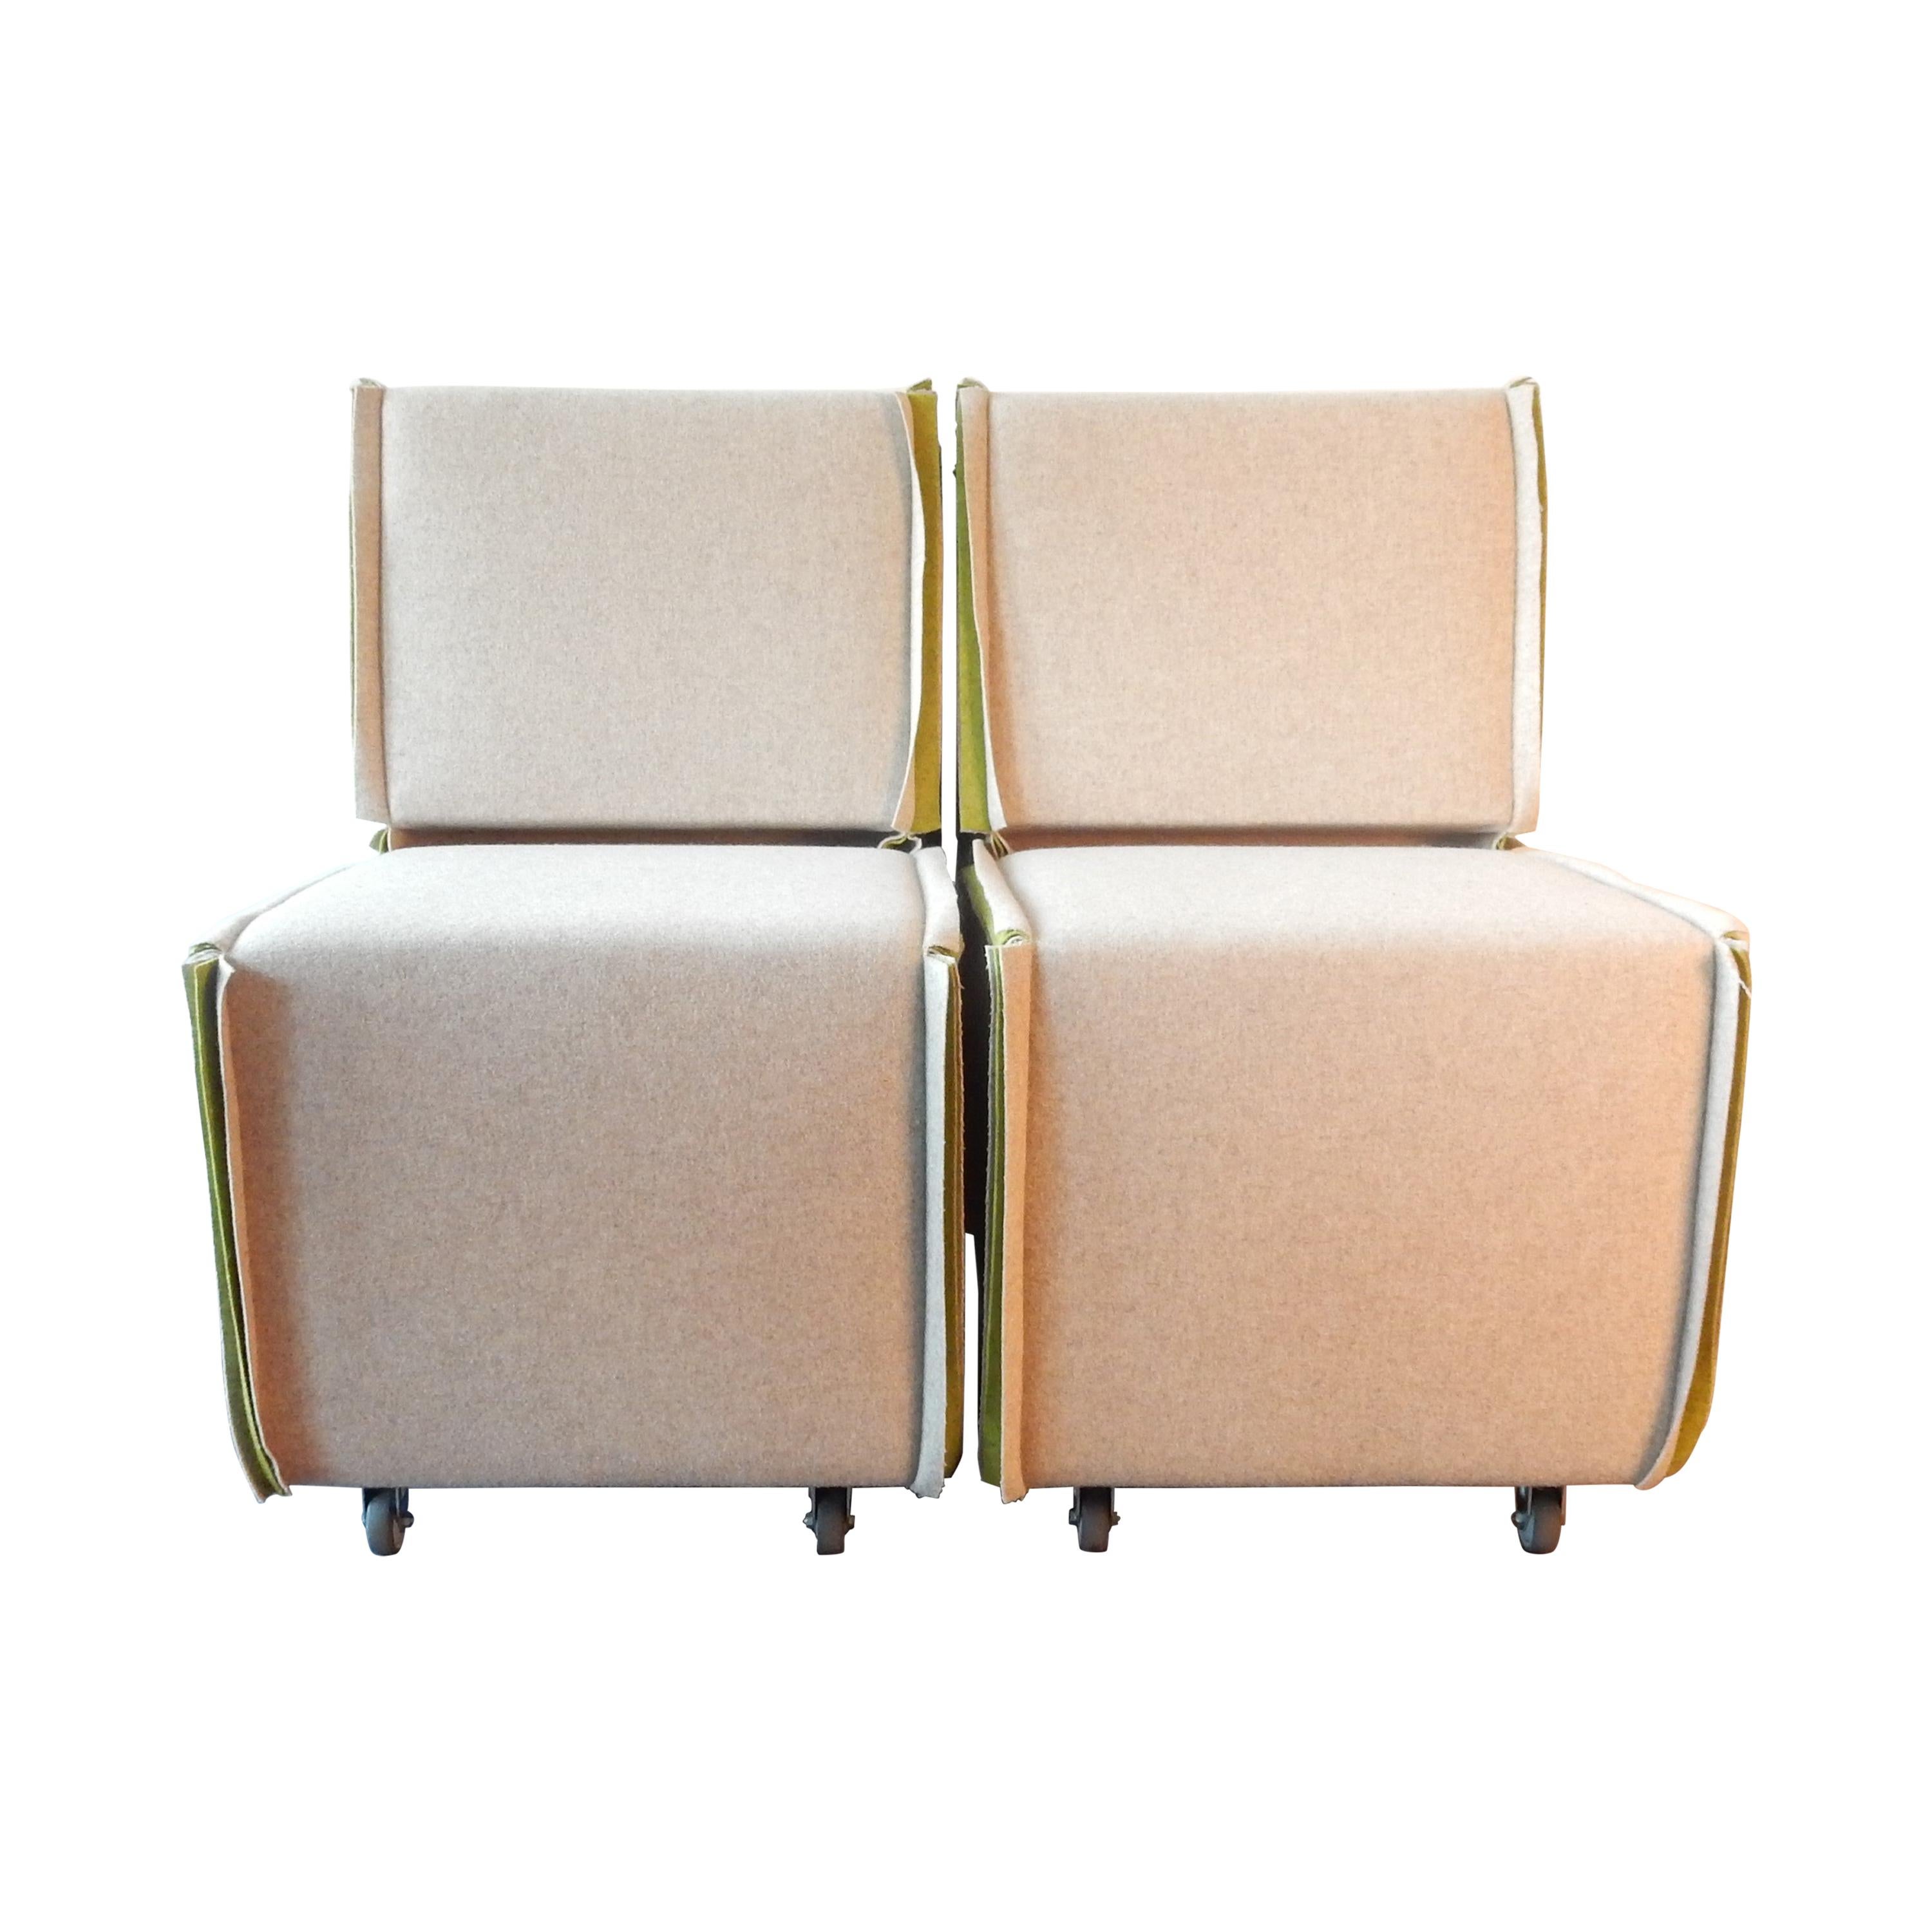 Set of 2 Felt Designer Chairs on Wheels by Merkx+Girod, the Netherlands, 2003